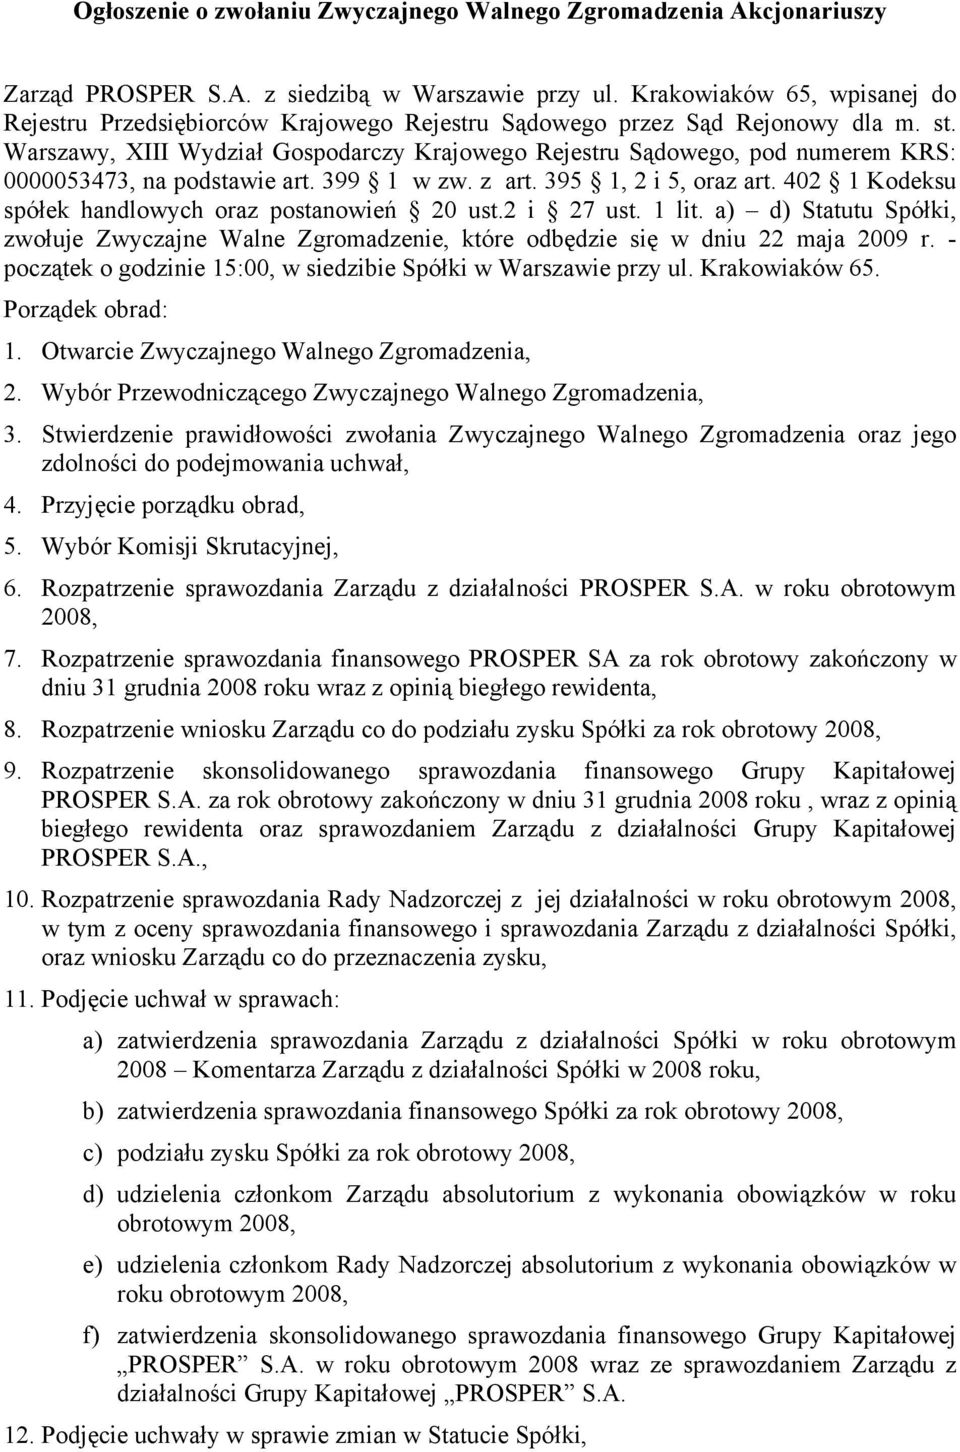 Warszawy, XIII Wydział Gospodarczy Krajowego Rejestru Sądowego, pod numerem KRS: 0000053473, na podstawie art. 399 1 w zw. z art. 395 1, 2 i 5, oraz art.